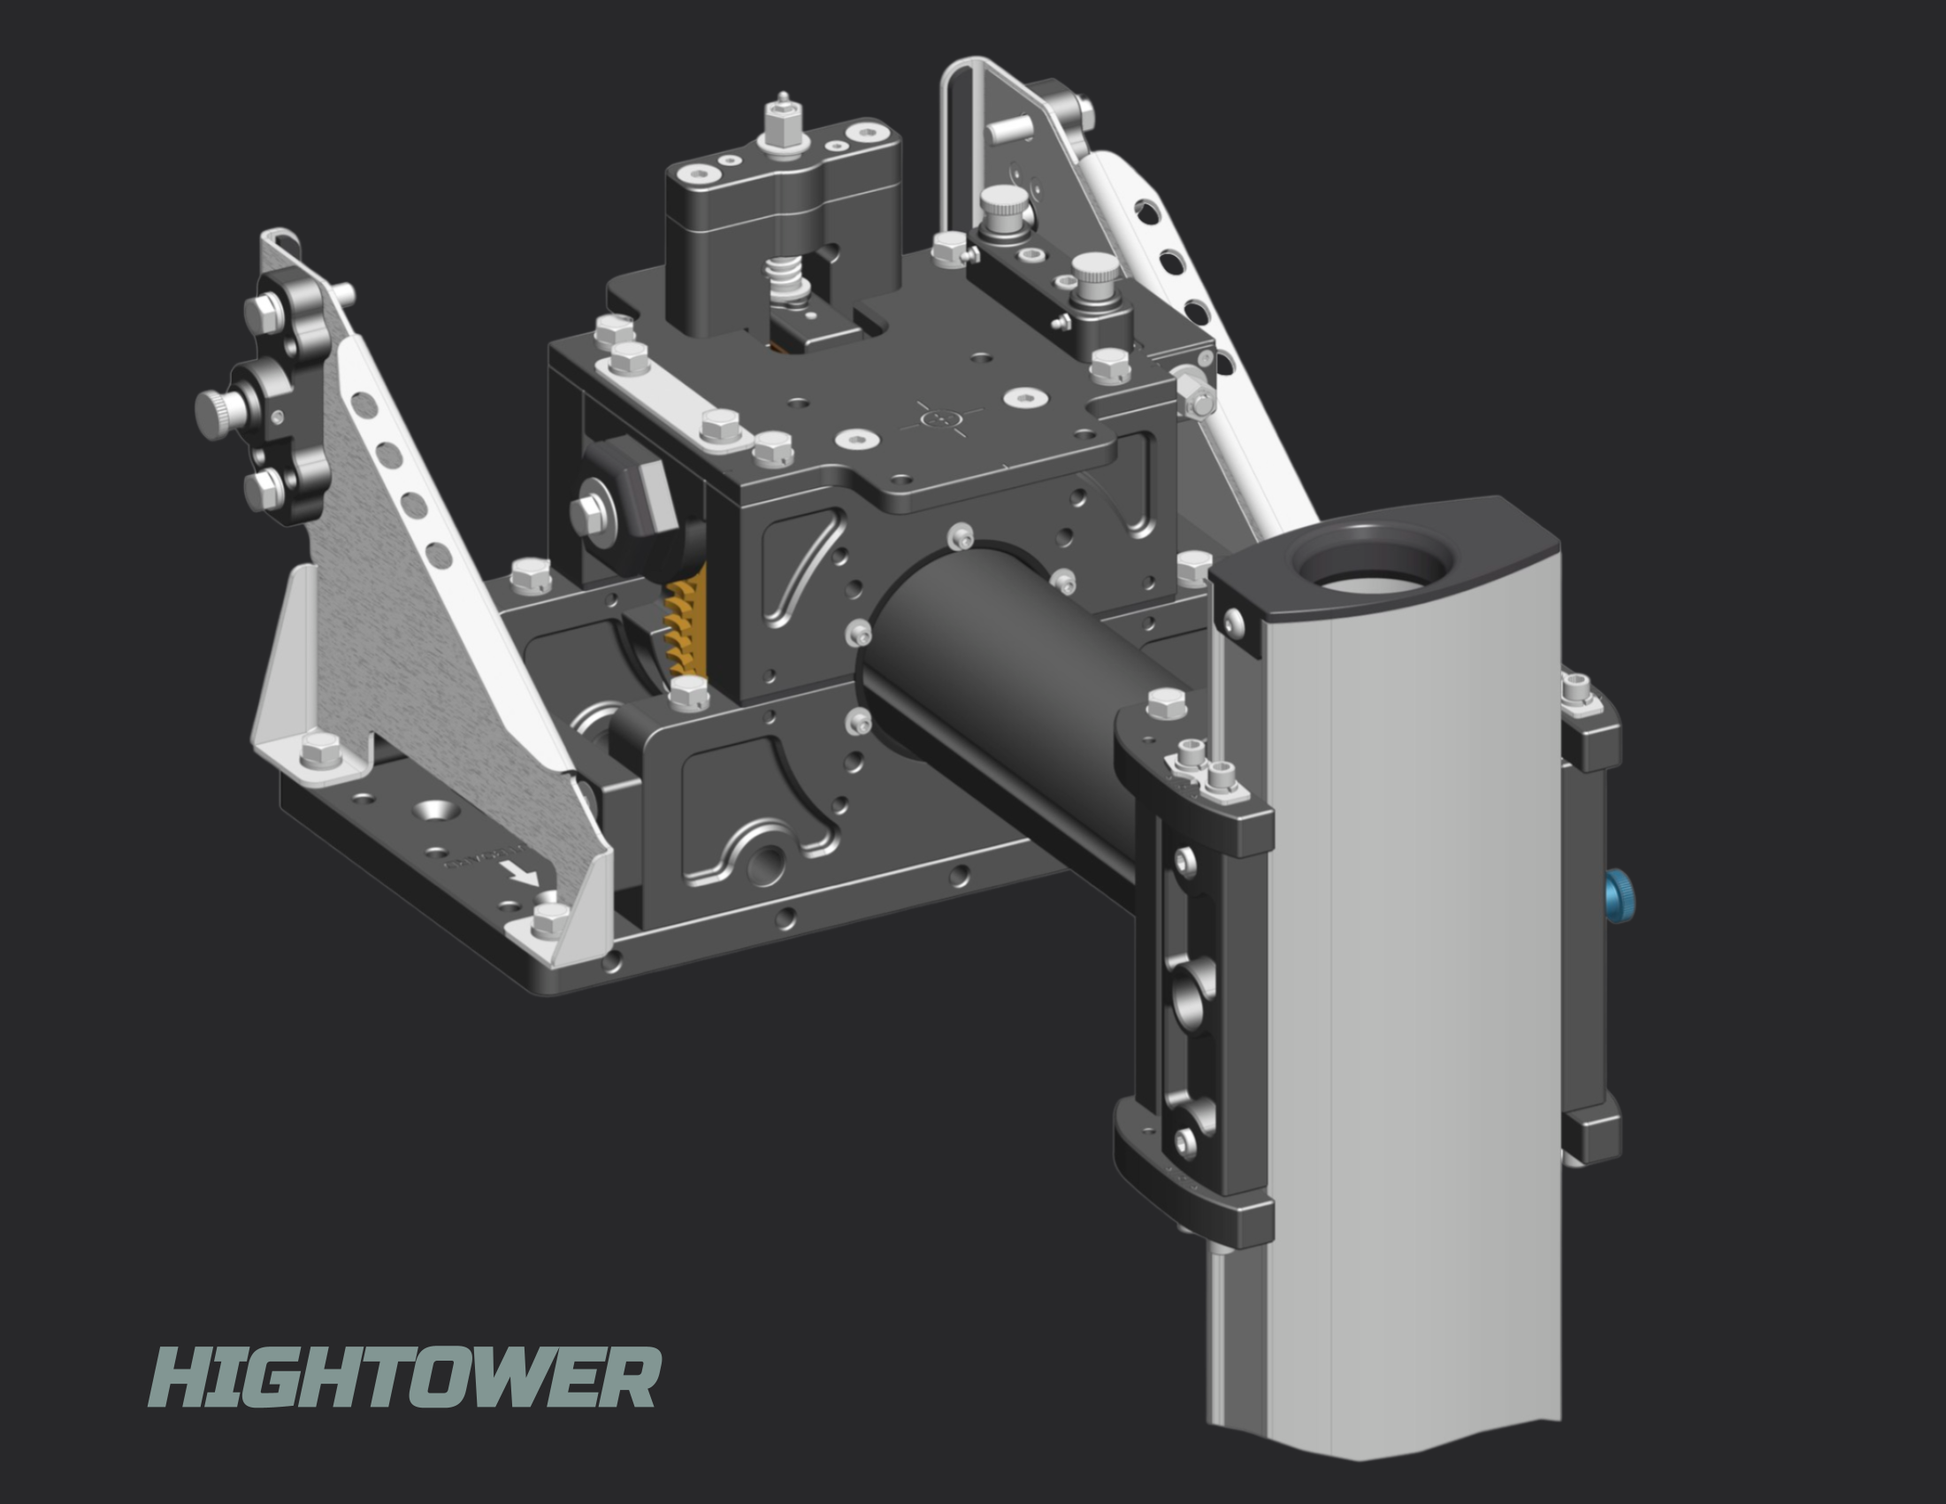 hightower for multibeam sonarv